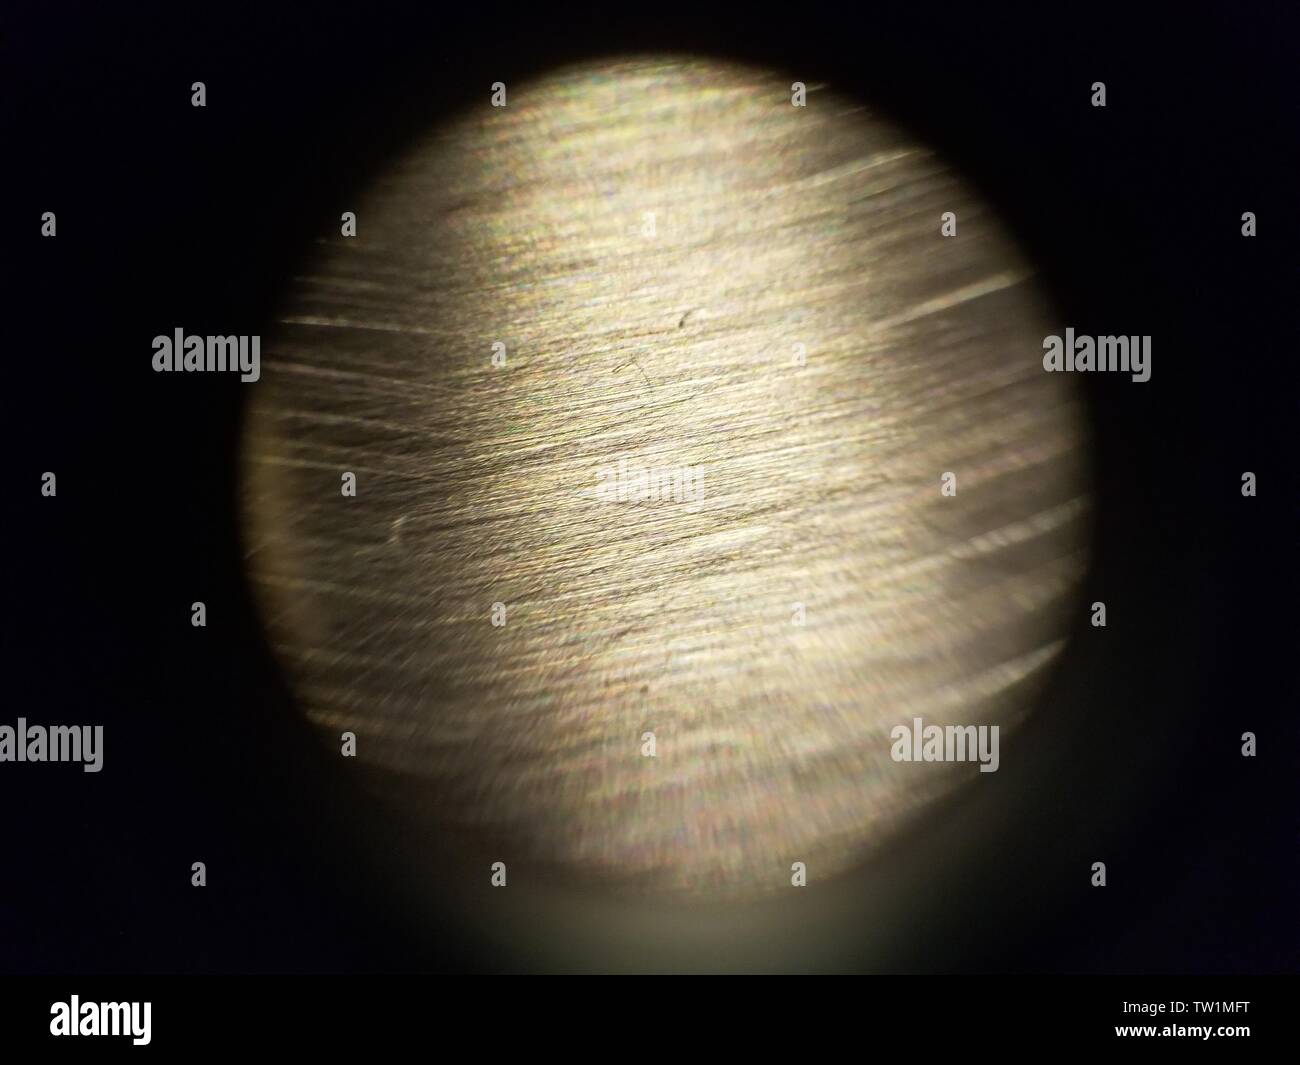 Photo prise au microscope d'une surface en acier inoxydable à environ 30x de grossissement, le 25 mai 2019. () Banque D'Images